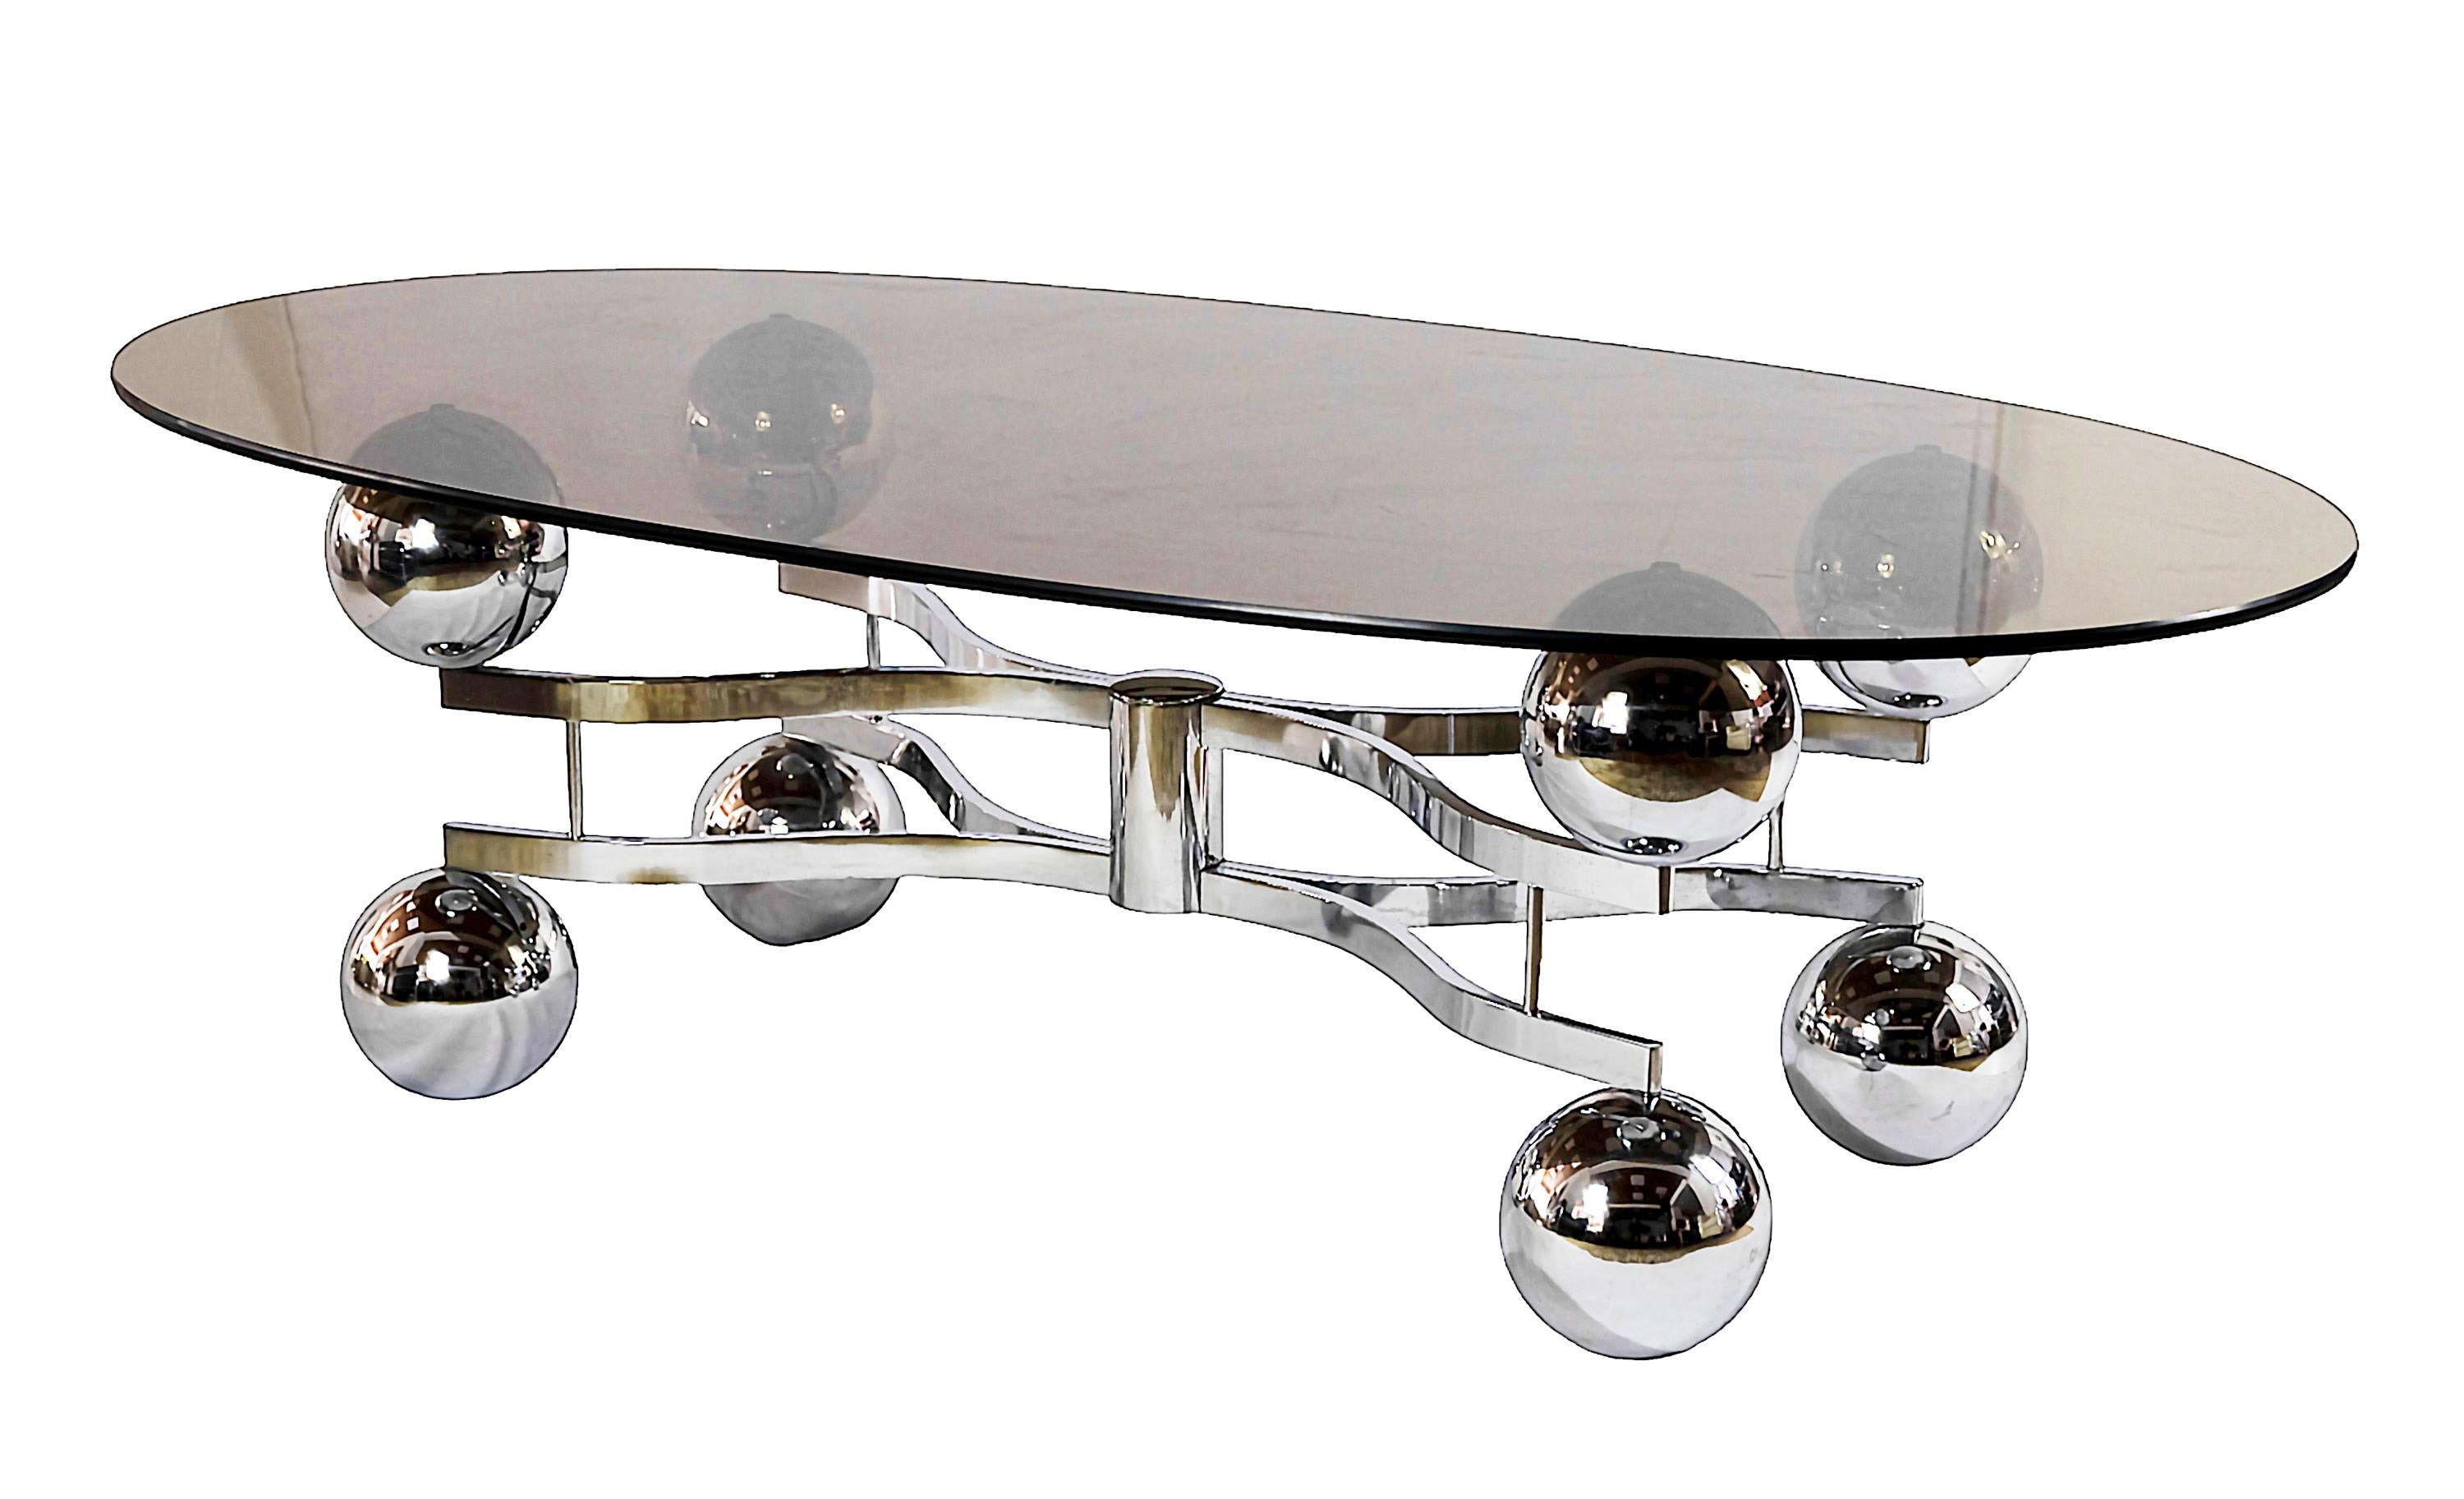 Table basse/sofa vintage italienne au design de l'ère spatiale des années 1970.
La base est en métal chromé avec des éléments ronds en forme de bulle et un plateau en verre ovale fumé.
Très bon/excellent état vintage.